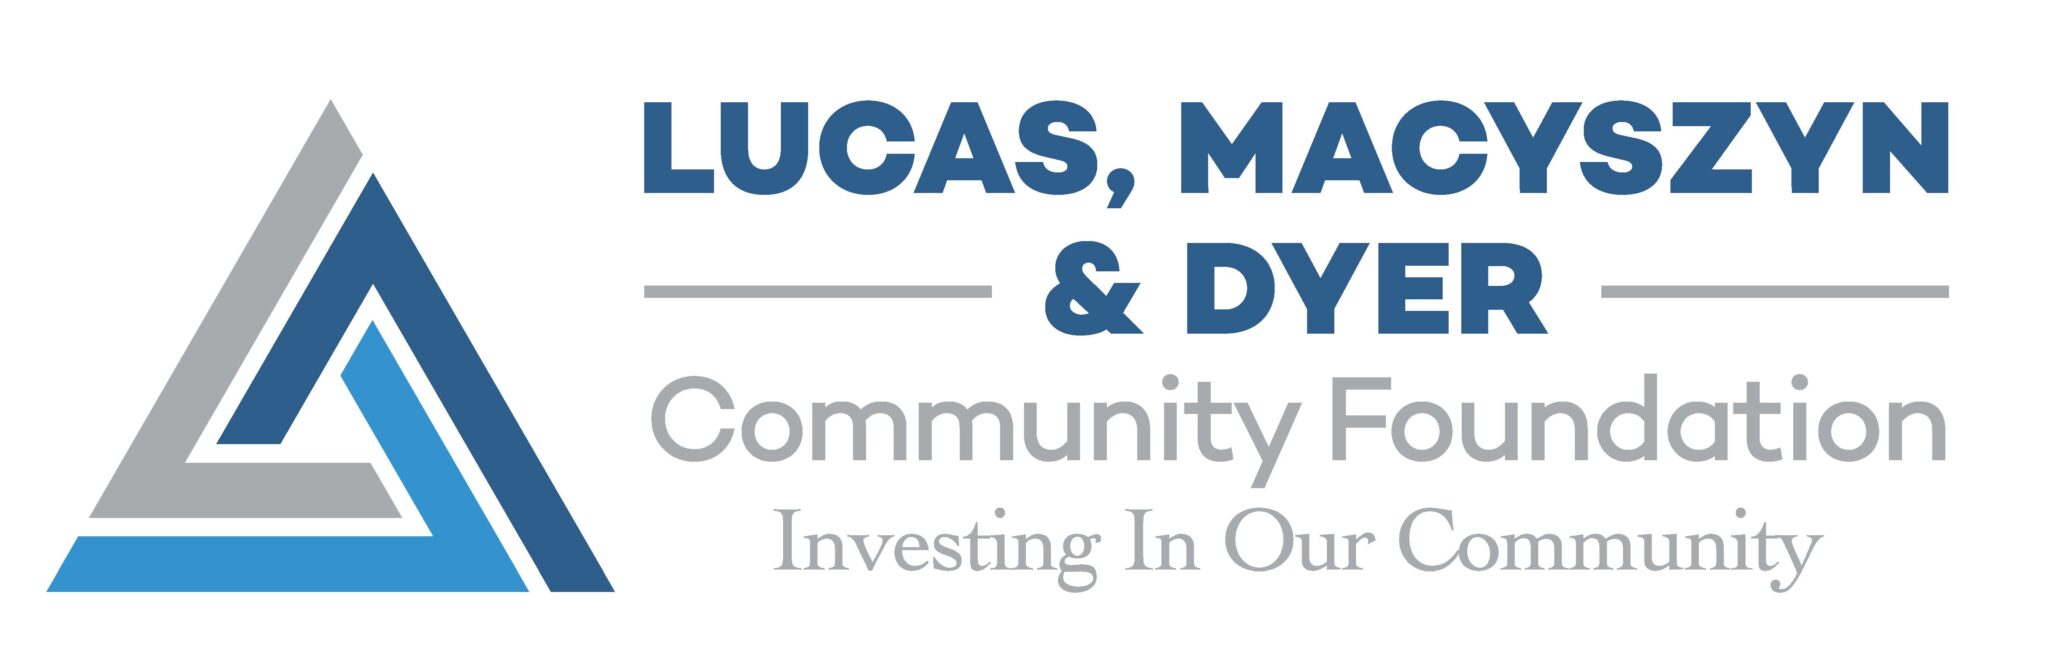 LMD Community logo